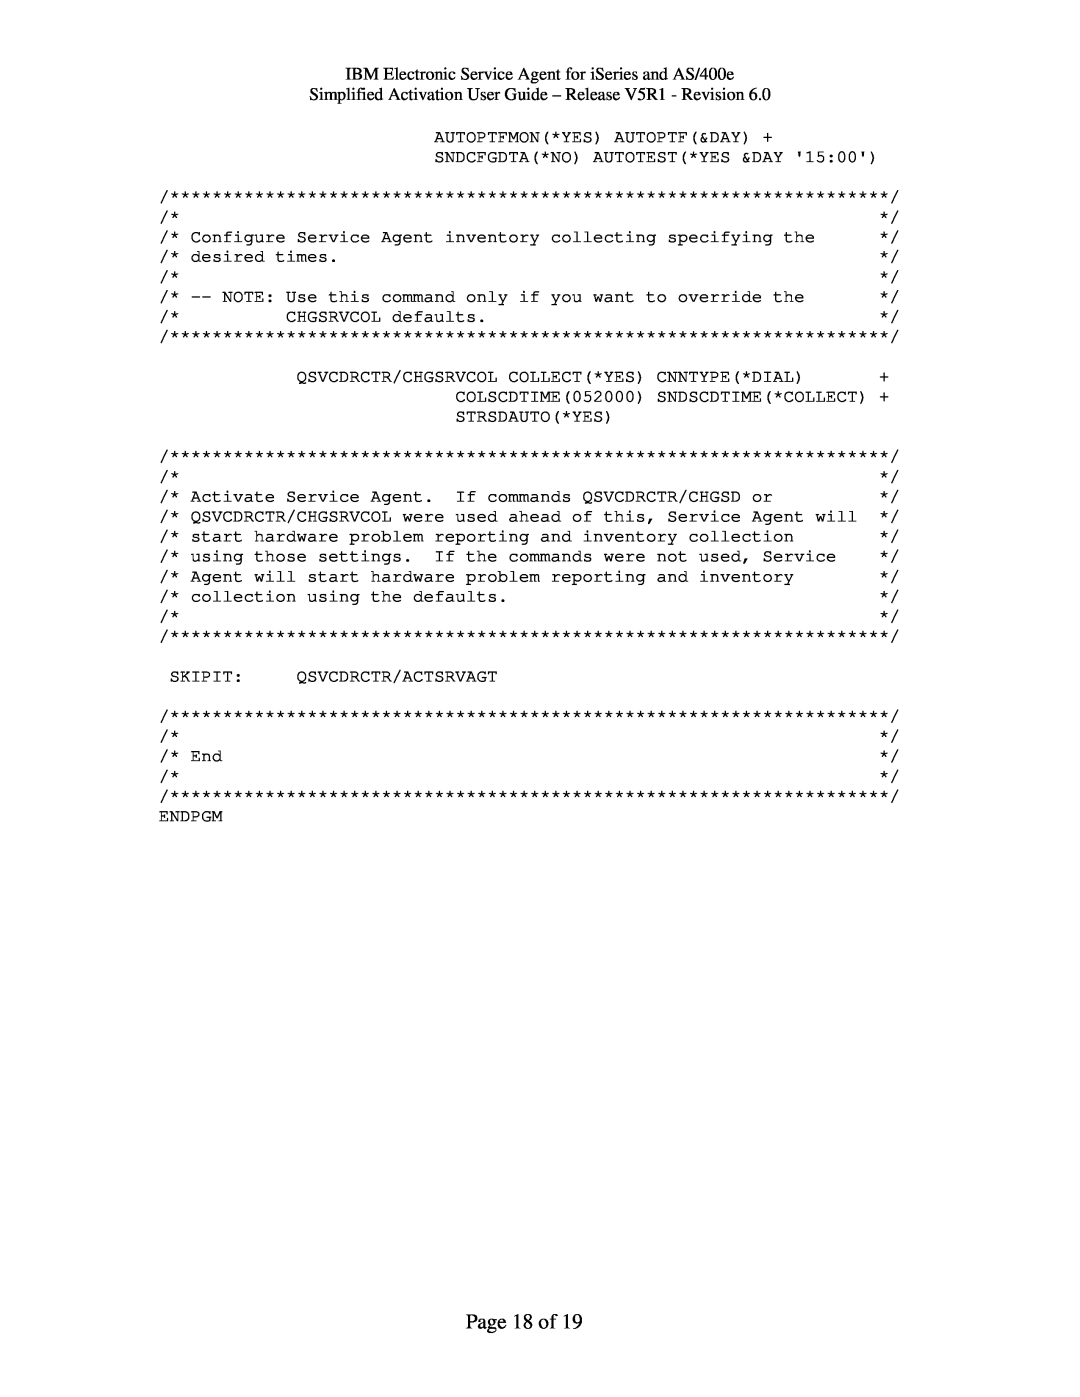 IBM iSeries, V5R1, PTF SF67624 manual Page 18 of 